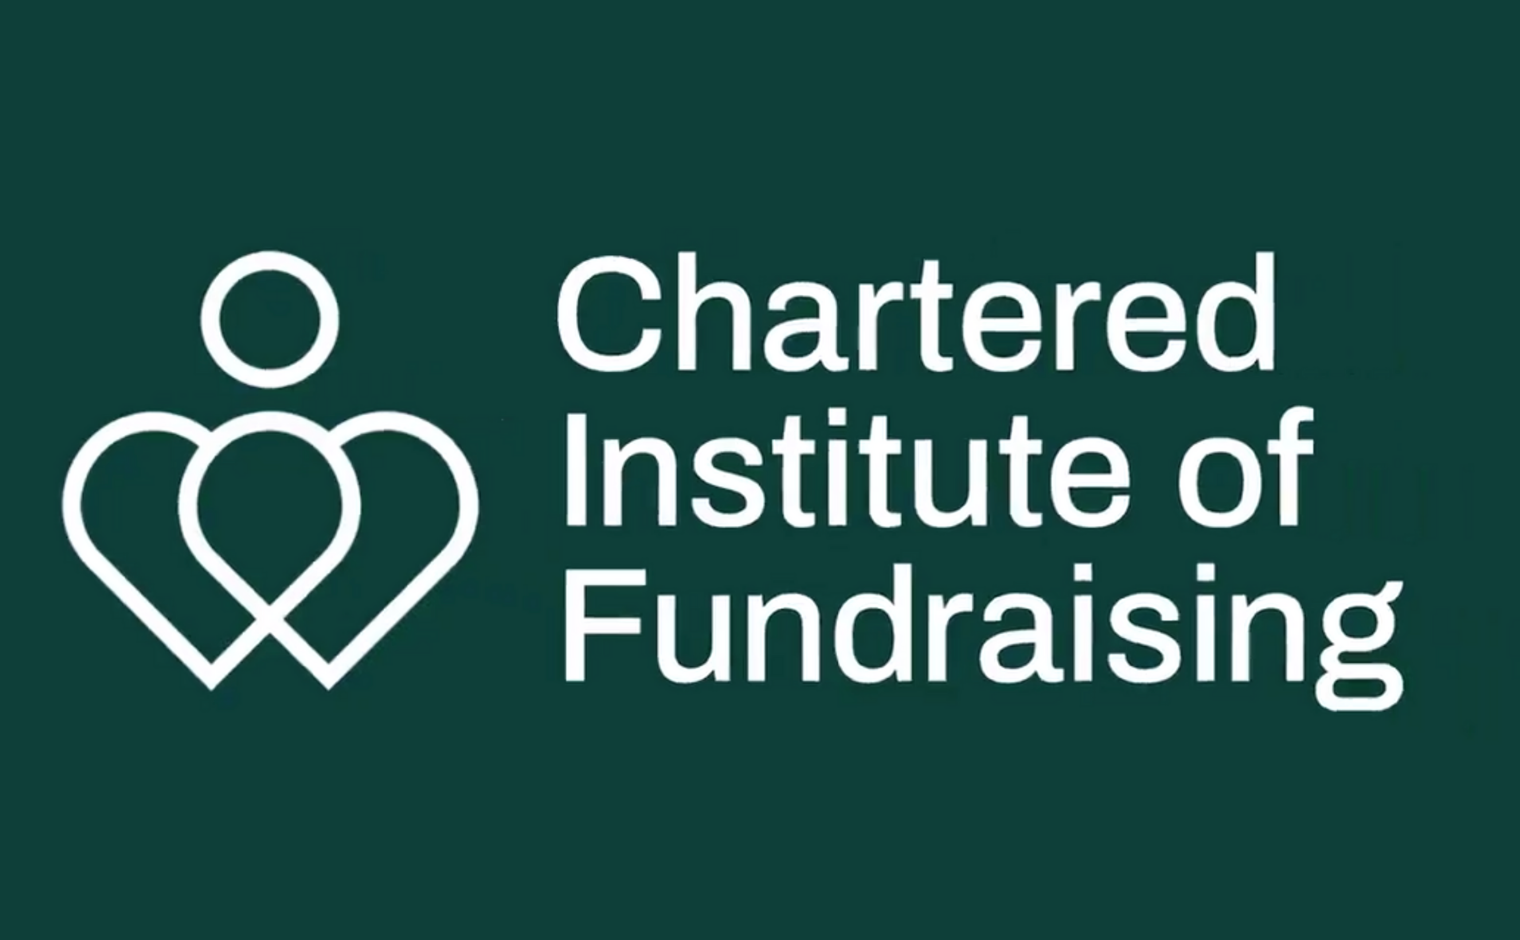 Het nieuwe logo (2020) van het Chartered Institute of Fundraising (CIOF).